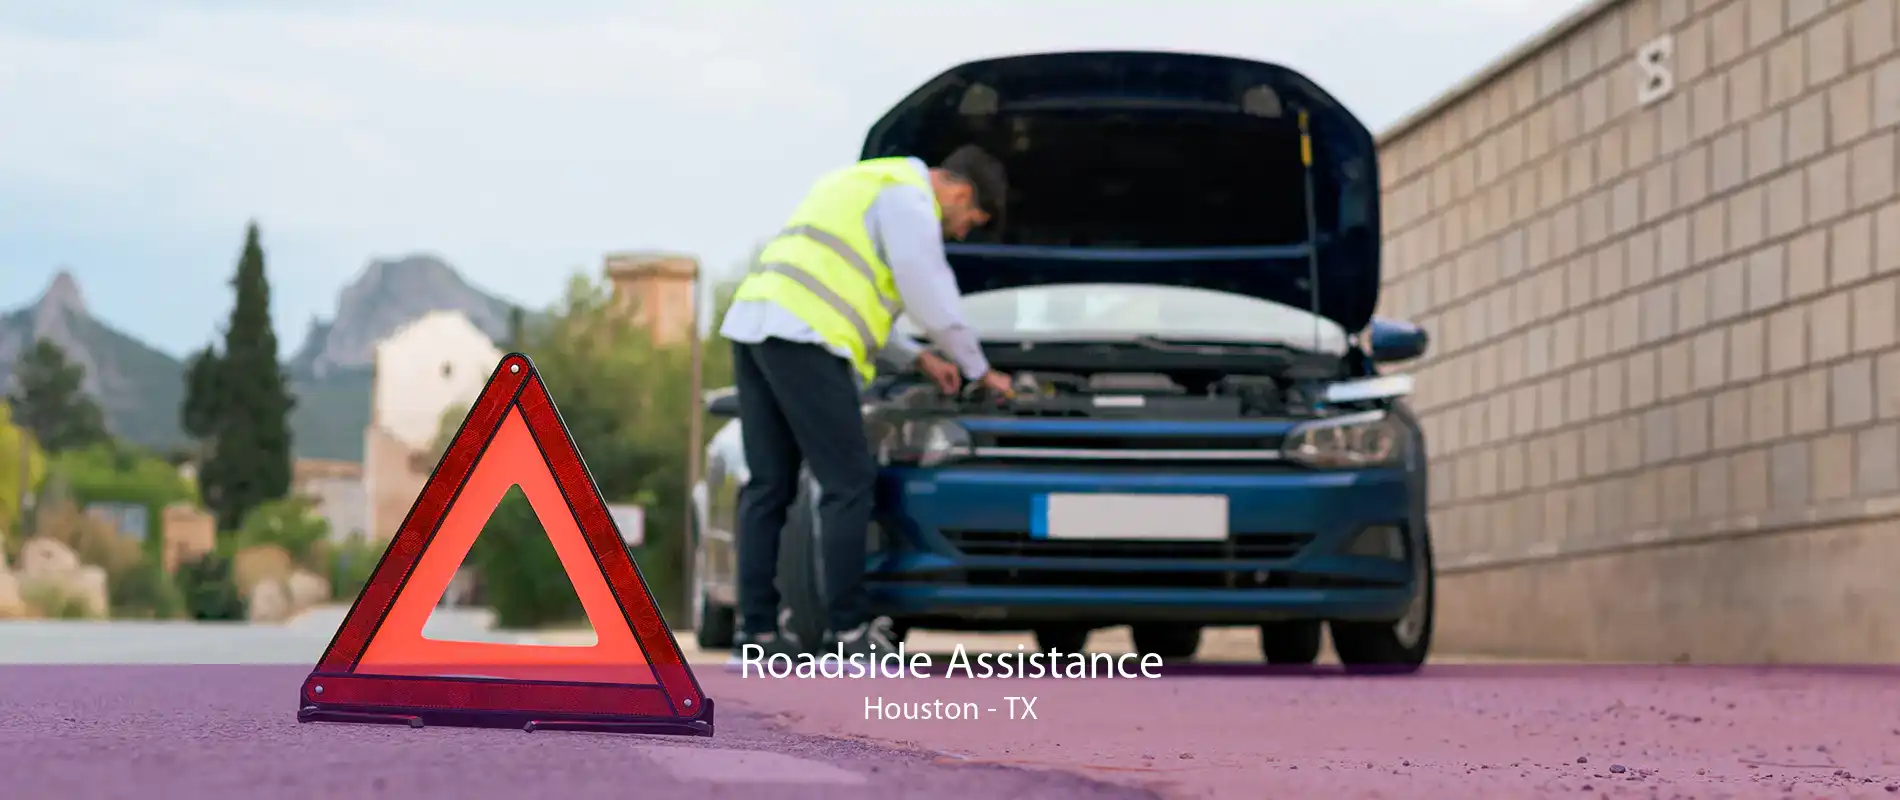 Roadside Assistance Houston - TX